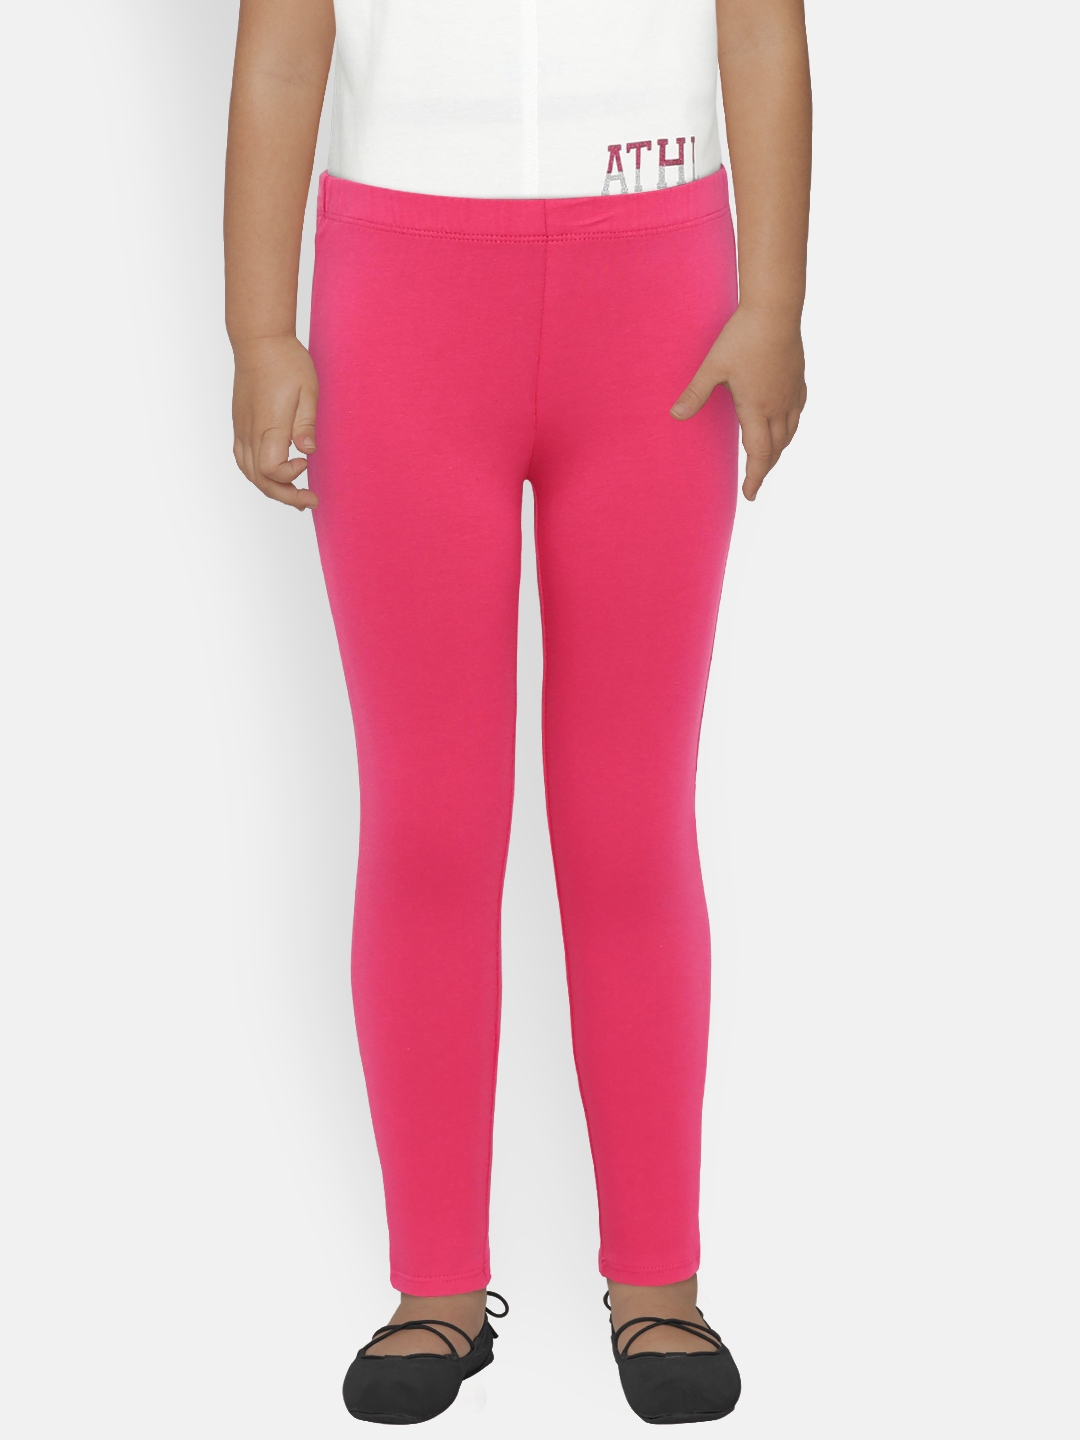 ladies pink leggings